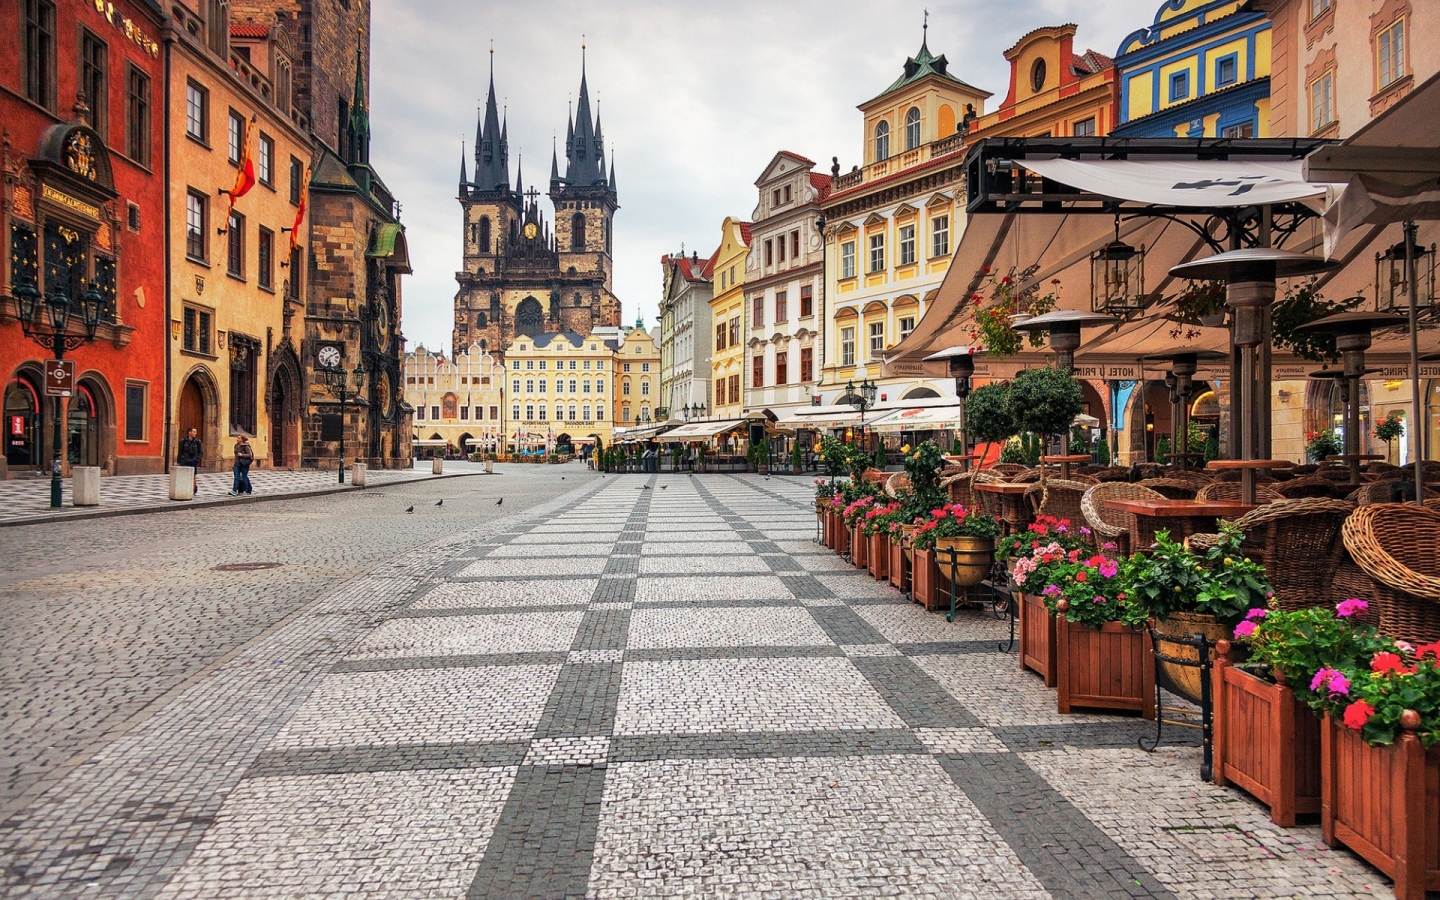 Prague City Center for 1440 x 900 widescreen resolution